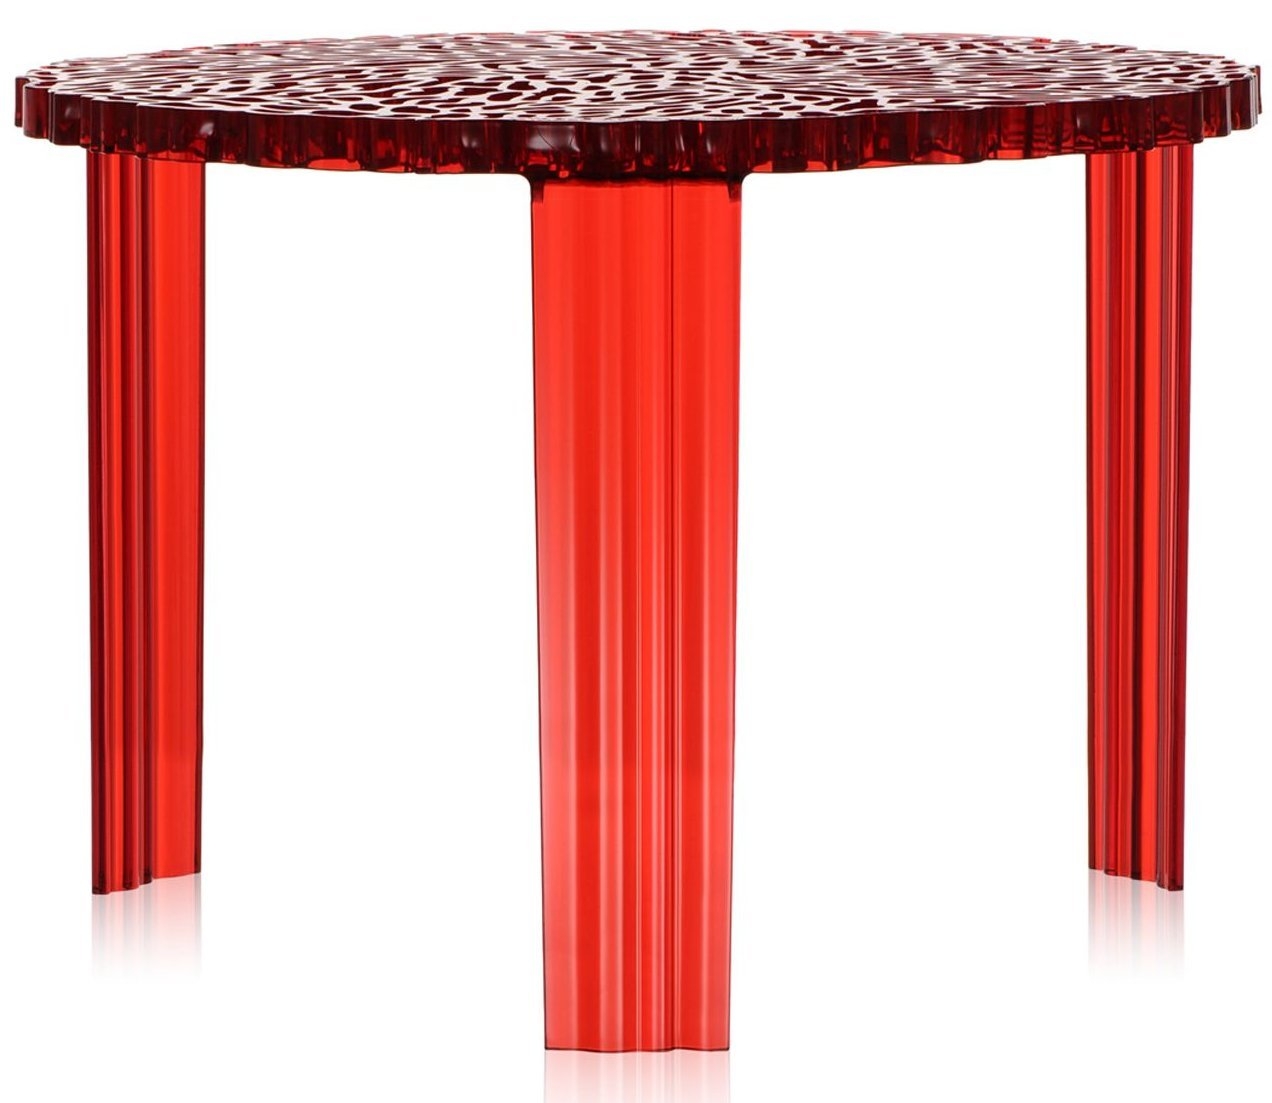 Masuta Kartell T-Table design Patricia Urquiola 50cm h 36cm rosu transparent 36cm imagine noua